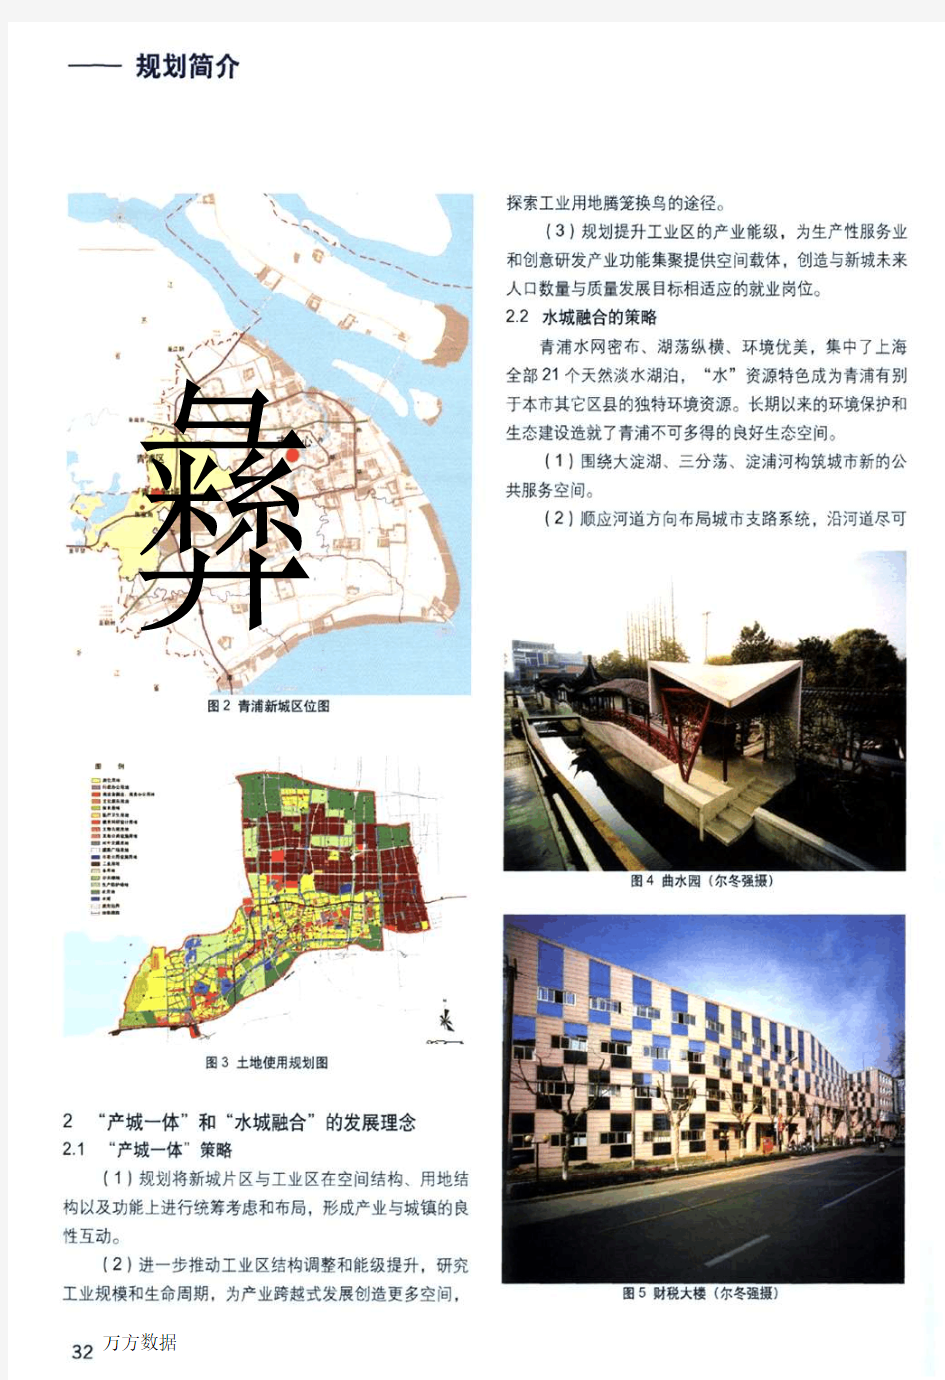 产城一体,水城融合——上海市青浦城区总体规划修改简介